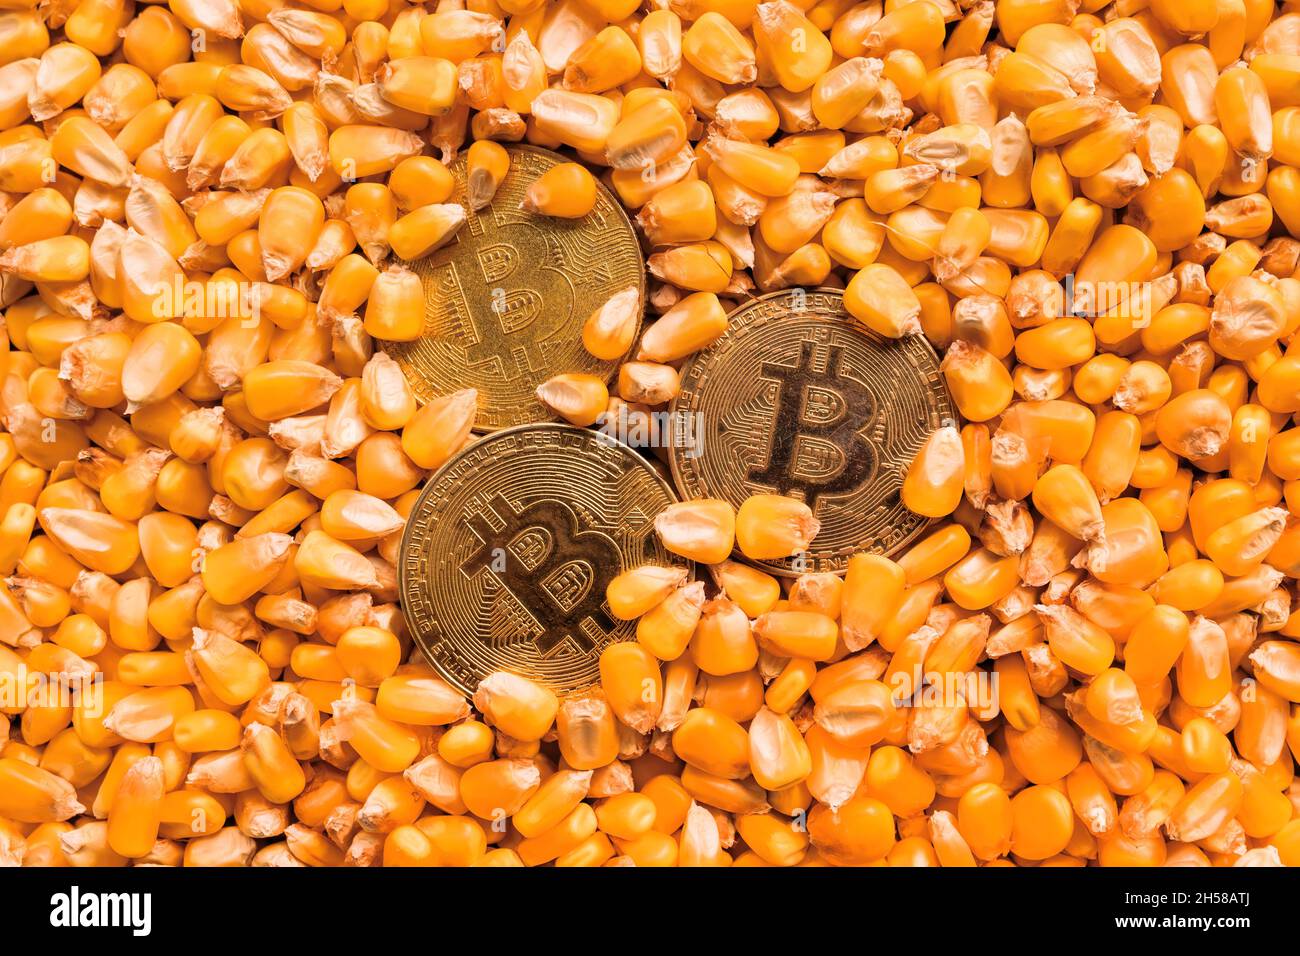 Le Bitcoin d'or pièces dans le grain de maïs récolté, le concept des marchés financiers et des matières premières Banque D'Images